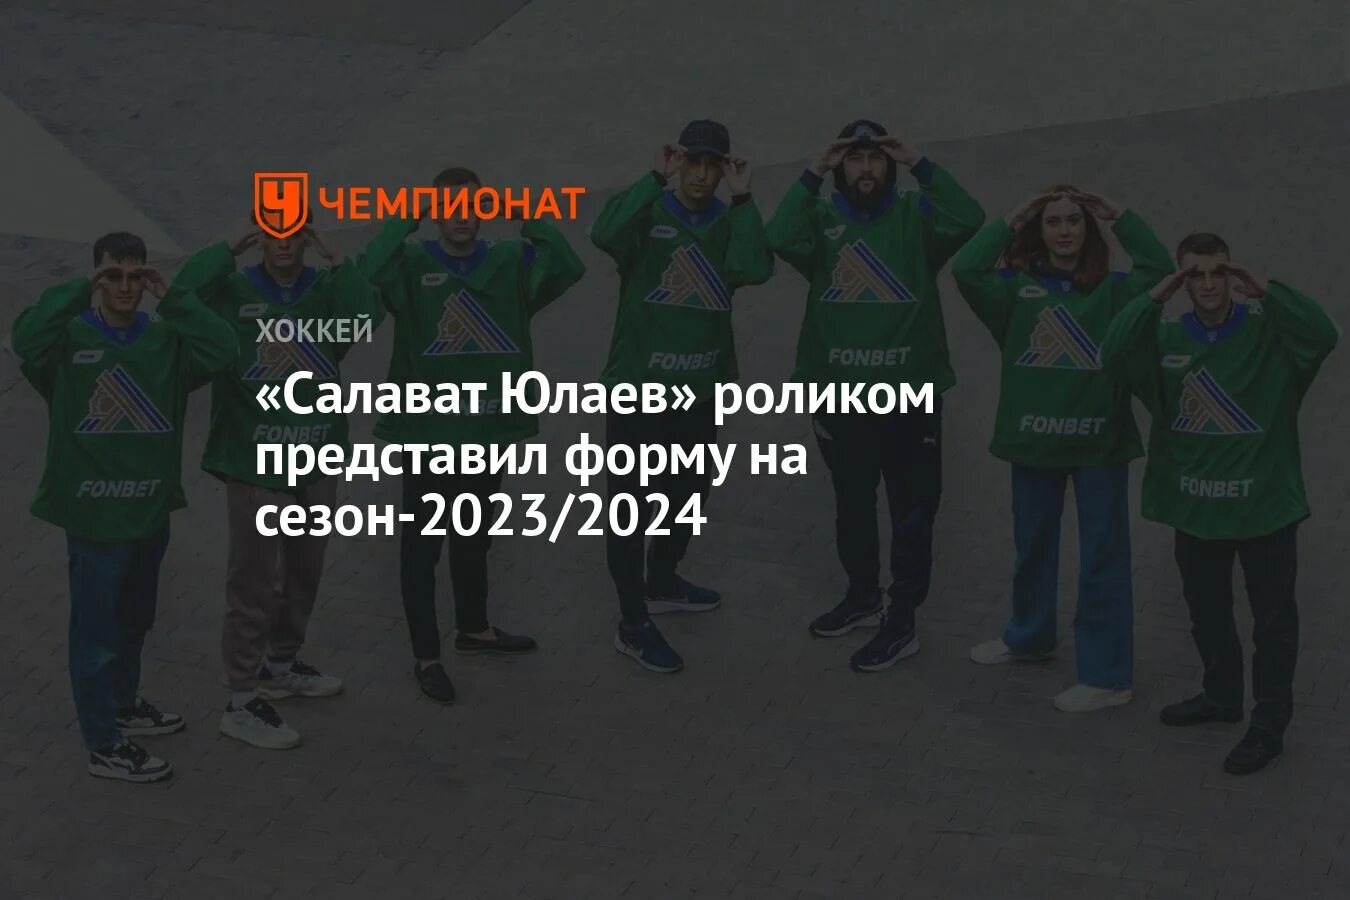 Салават Юлаев хоккейный клуб состав 2023 2024.